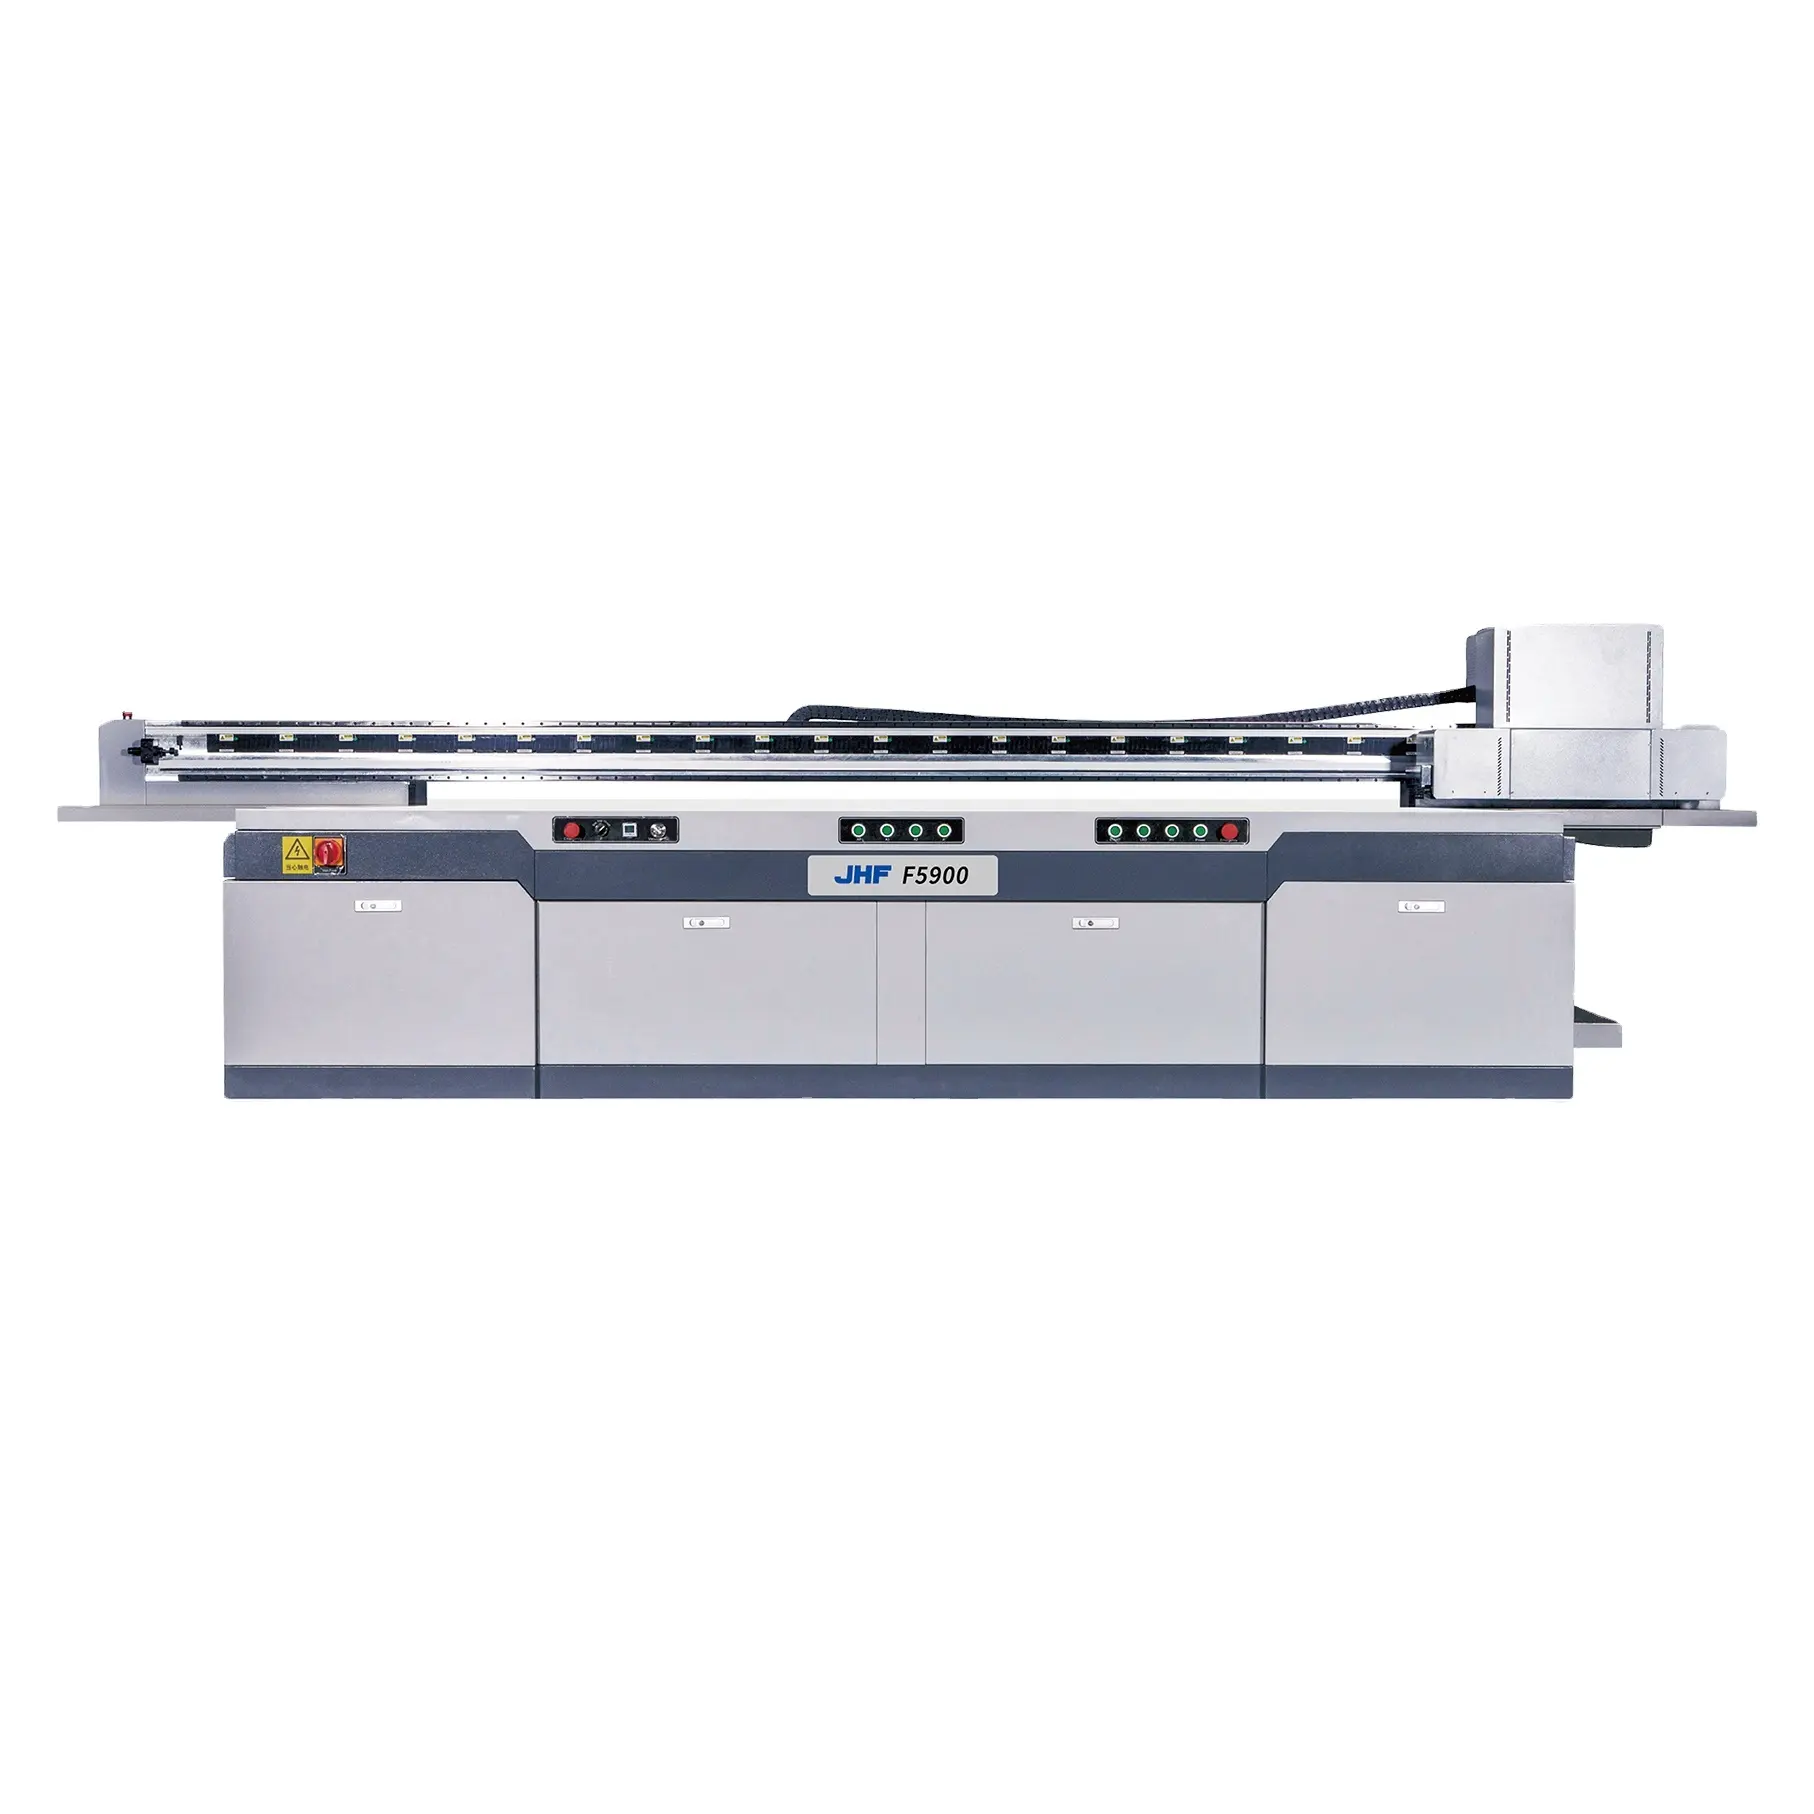 HF F5900 Werks-Direkt verkauf Hybrid-UV-Drucker Flach bett-und Roll-to-Roll-Drucker für den Leinwand druck